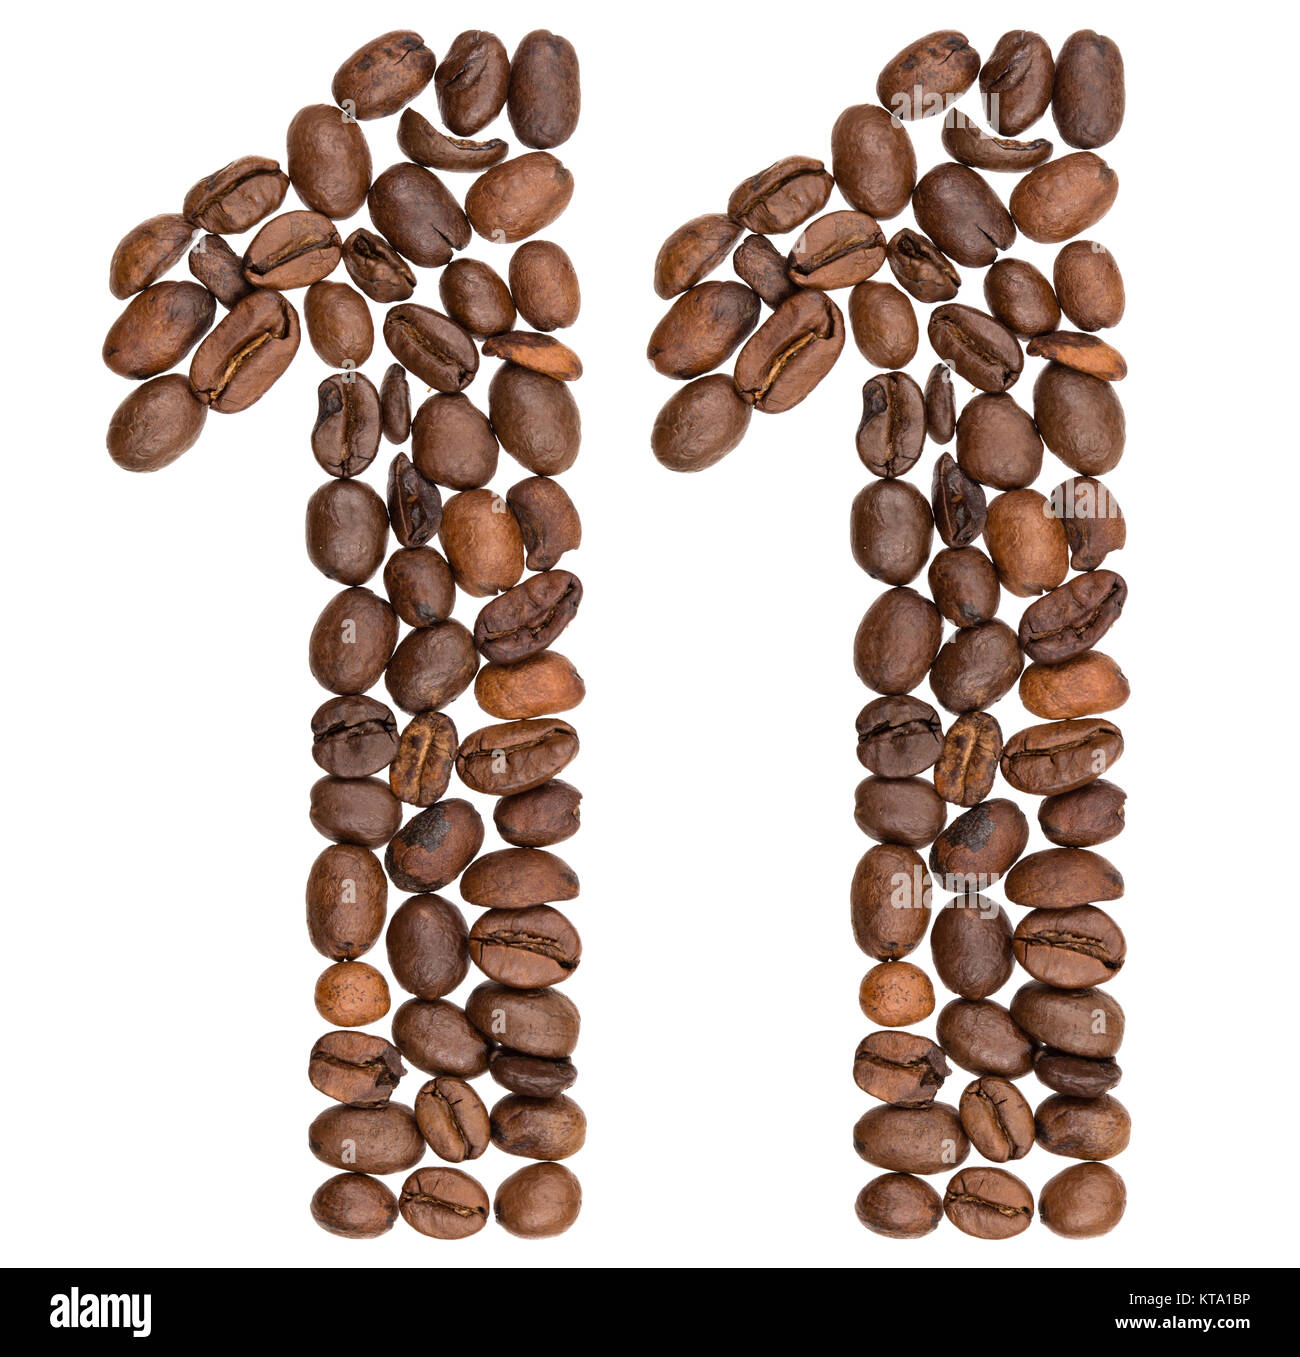 Numero arabo 11, undici, dal caffè in grani, isolato su sfondo bianco Foto Stock